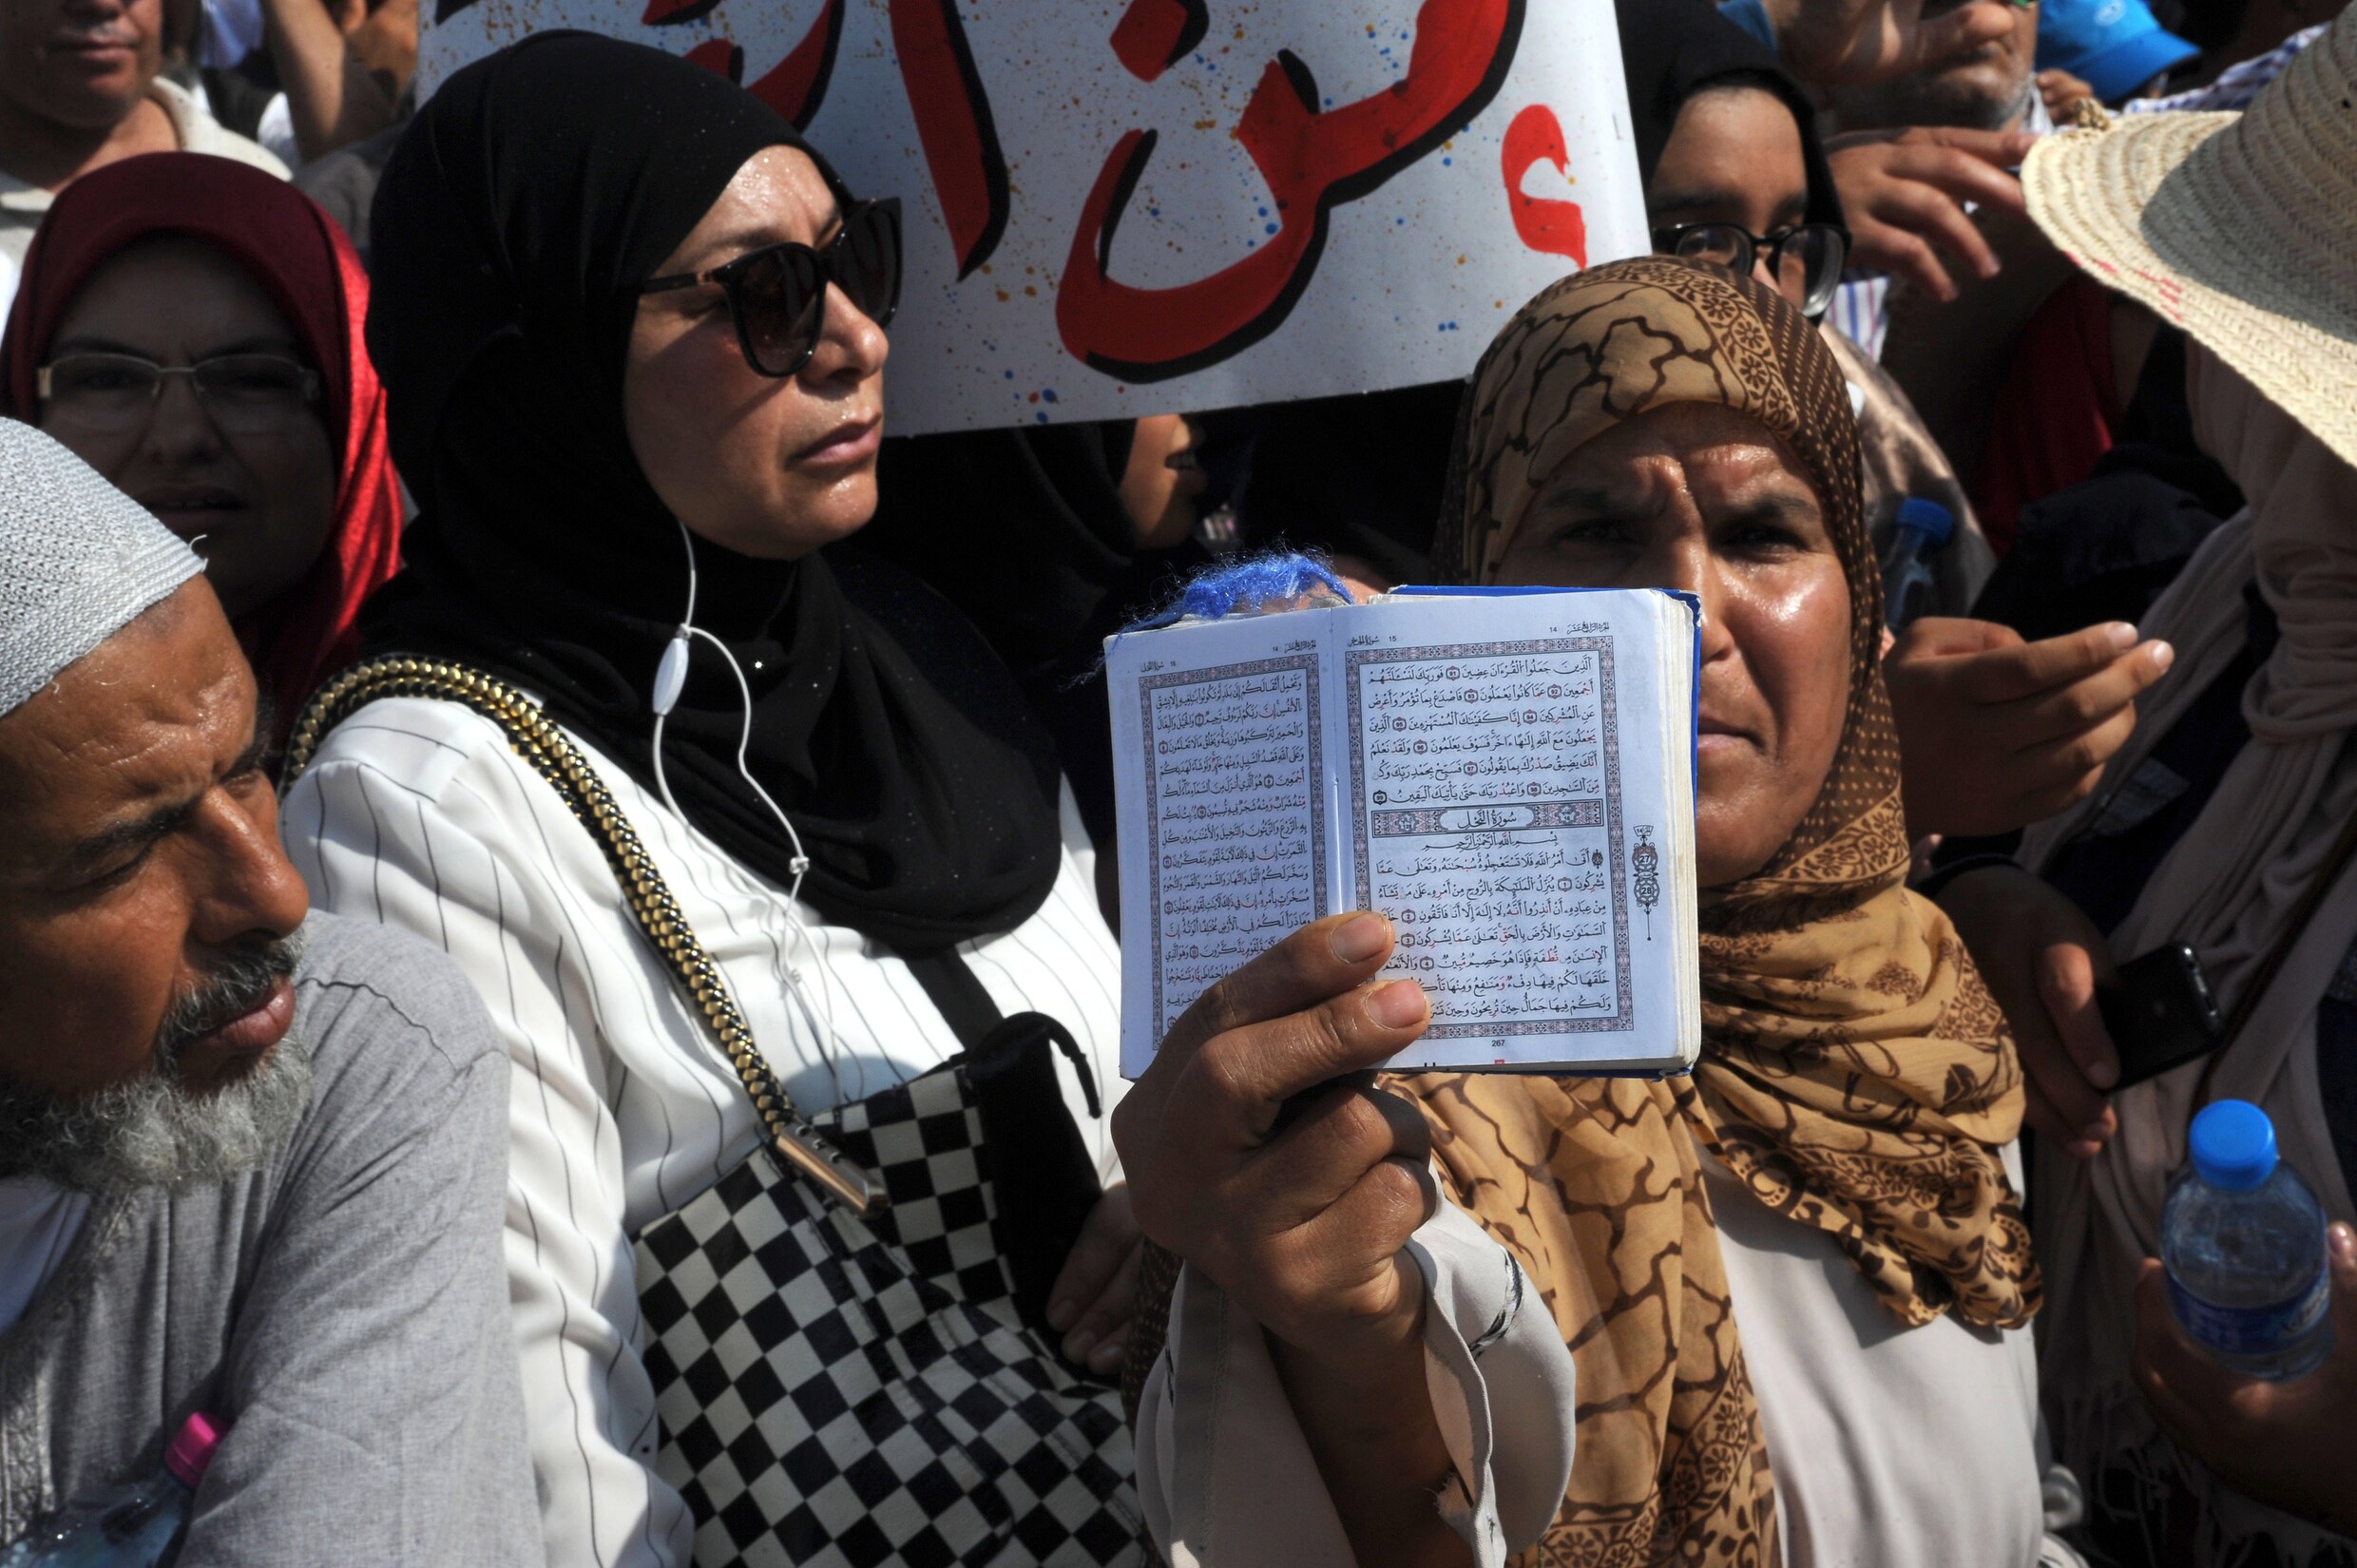 Honderden Tunesische mannen én vrouwen op straat tegen vrouwenrechten